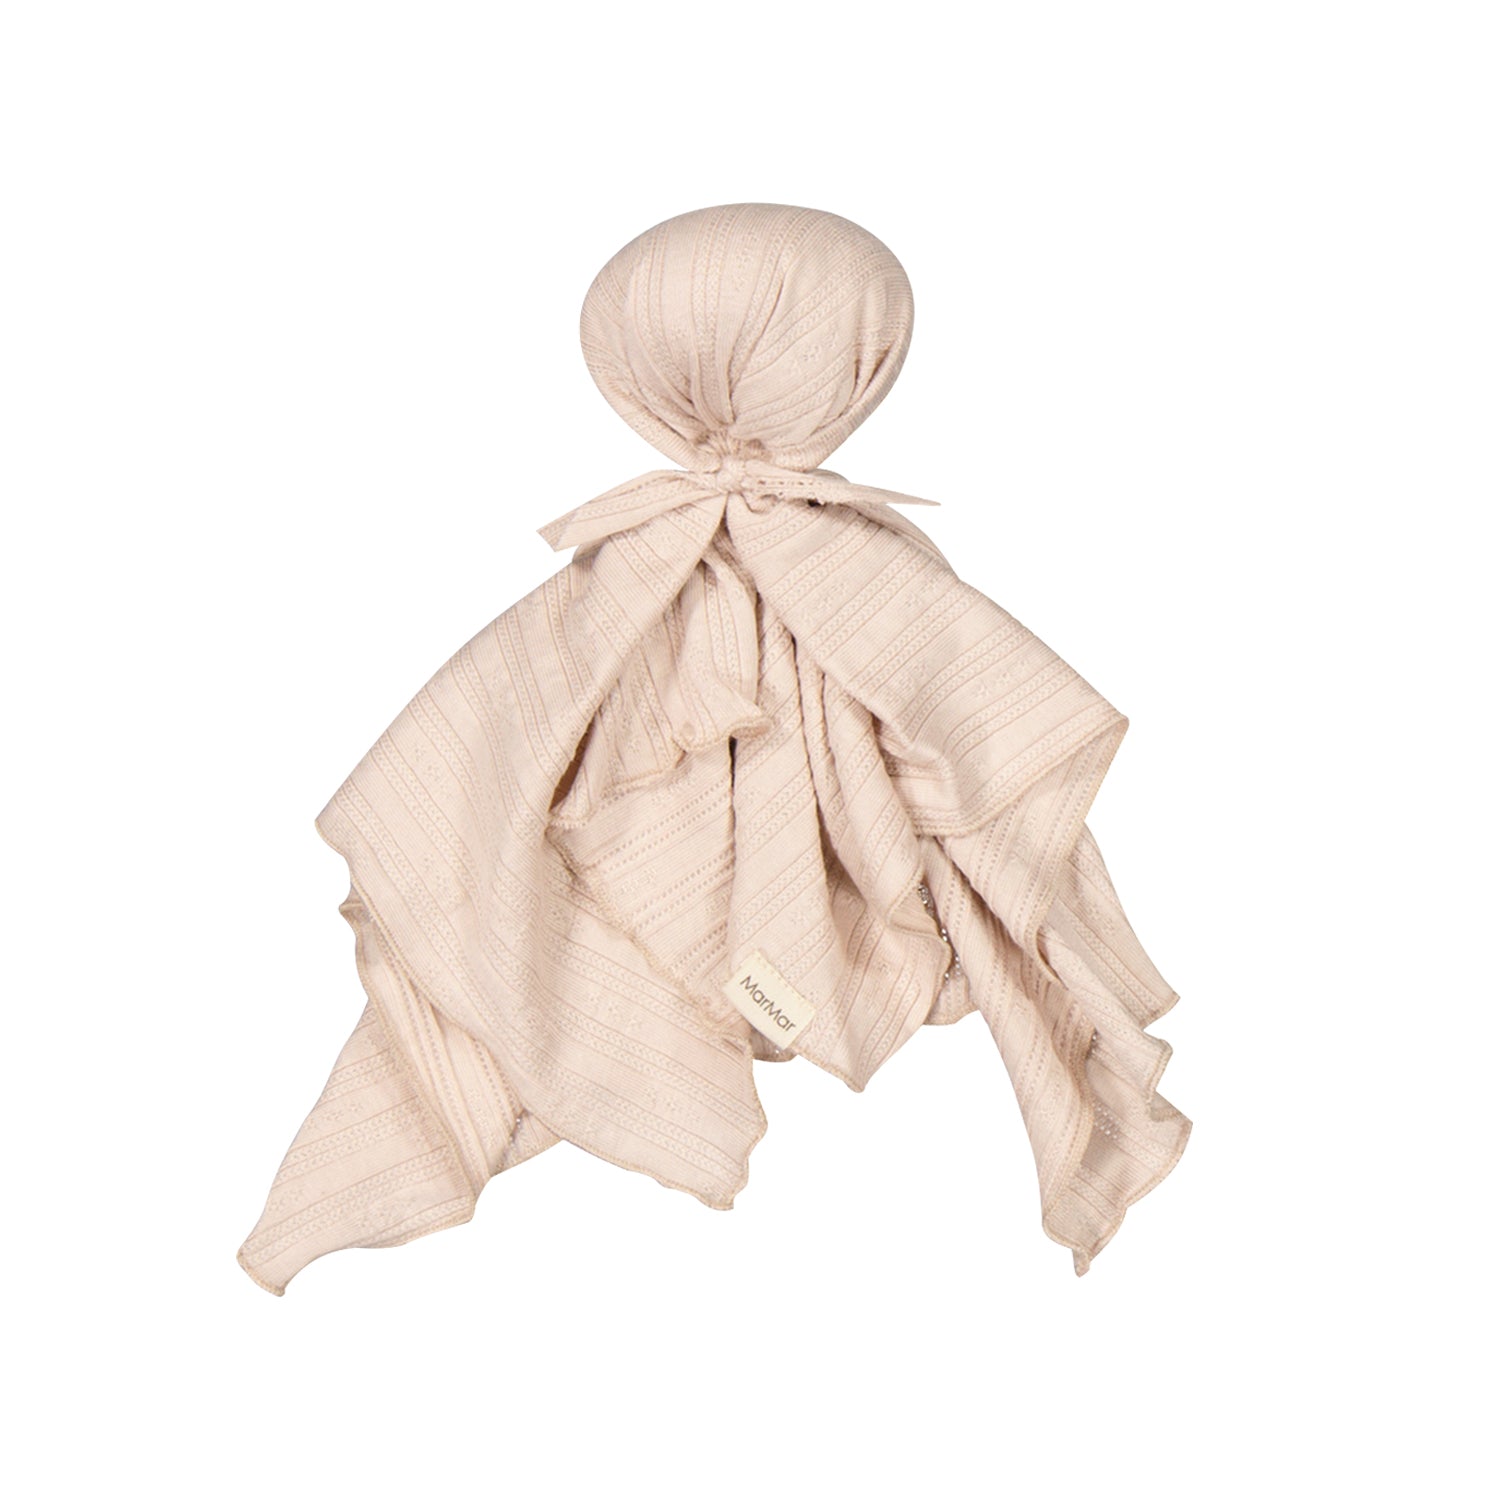 Marmar Copenhagen Cuddle Cloth - Cream Taupe